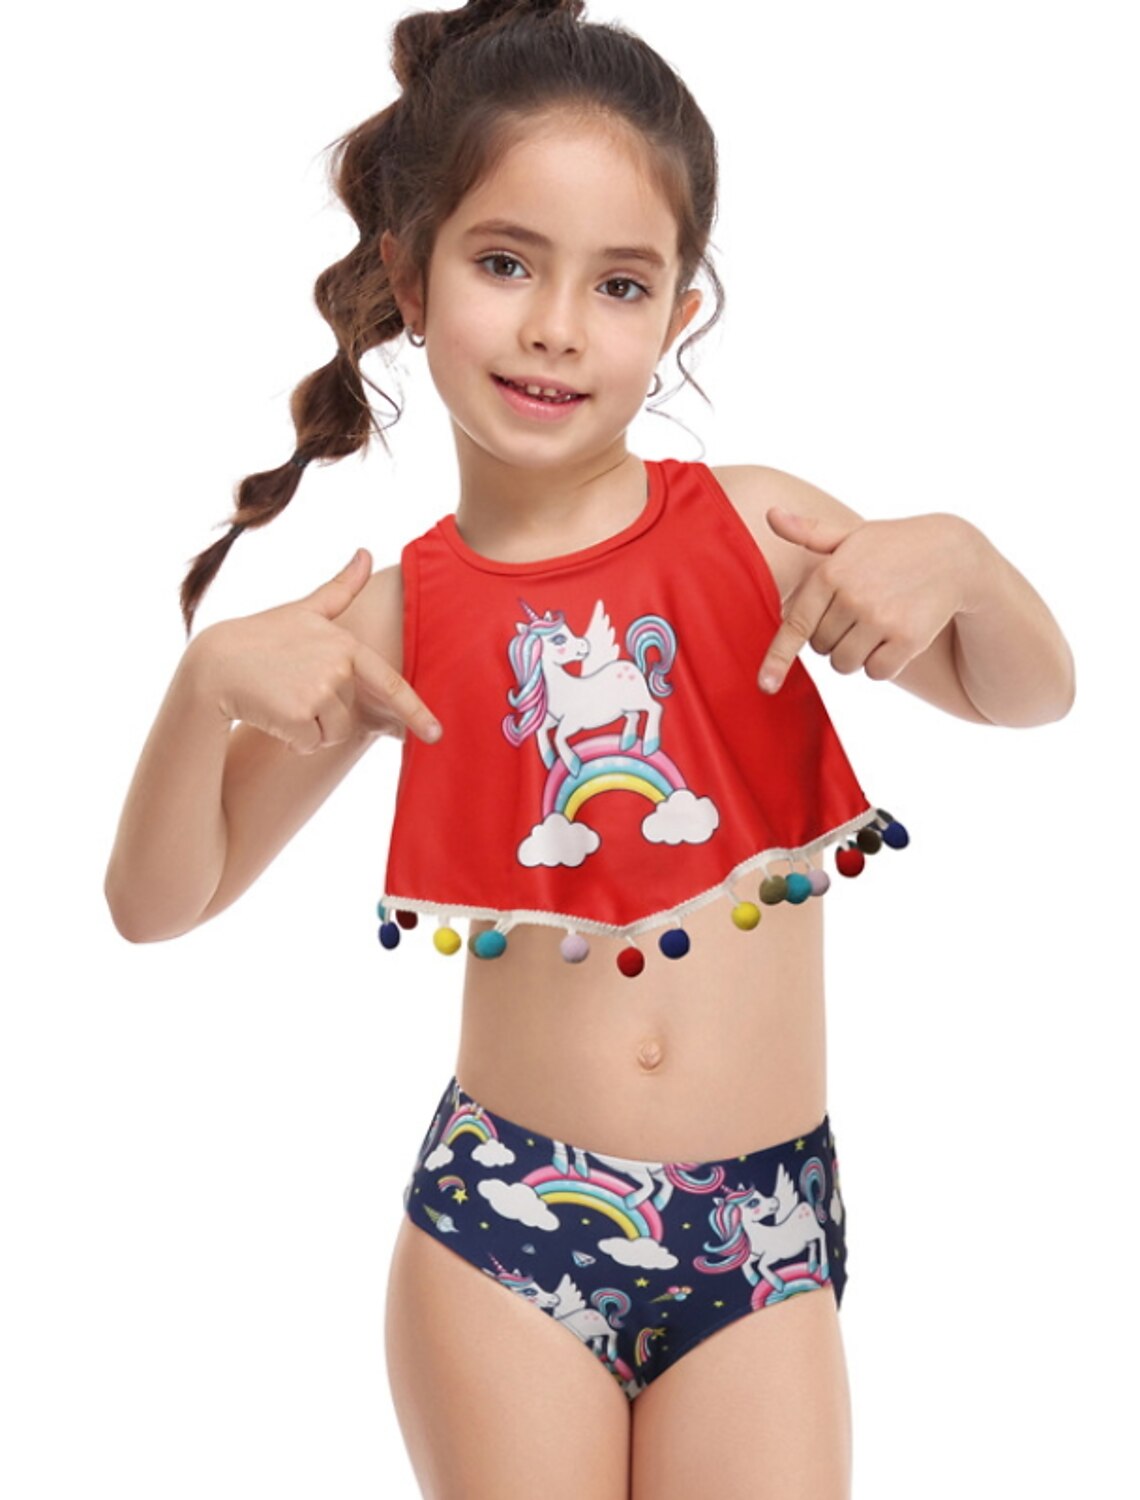 Girls Baby Kids Unicorn Swimming Costume Beach Swimsuit Swimwear Age 3-10 Years 